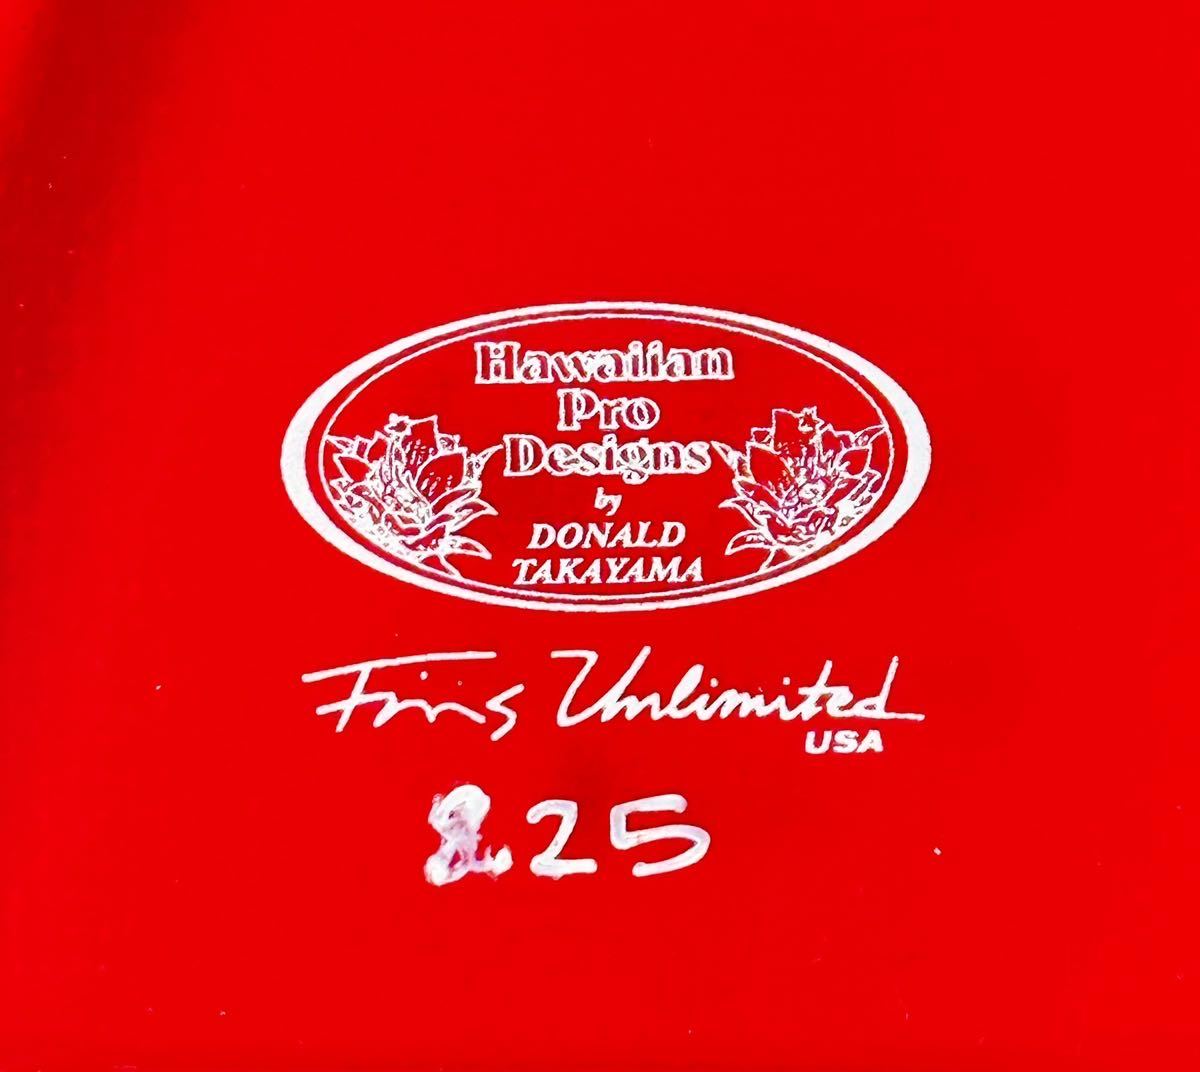 新品未使用品 DONALD TAKAYAMA ドナルドタカヤマ Hawaiian Pro Designs Fins Unlimited USA 8.25センターフィン　FIN_画像3